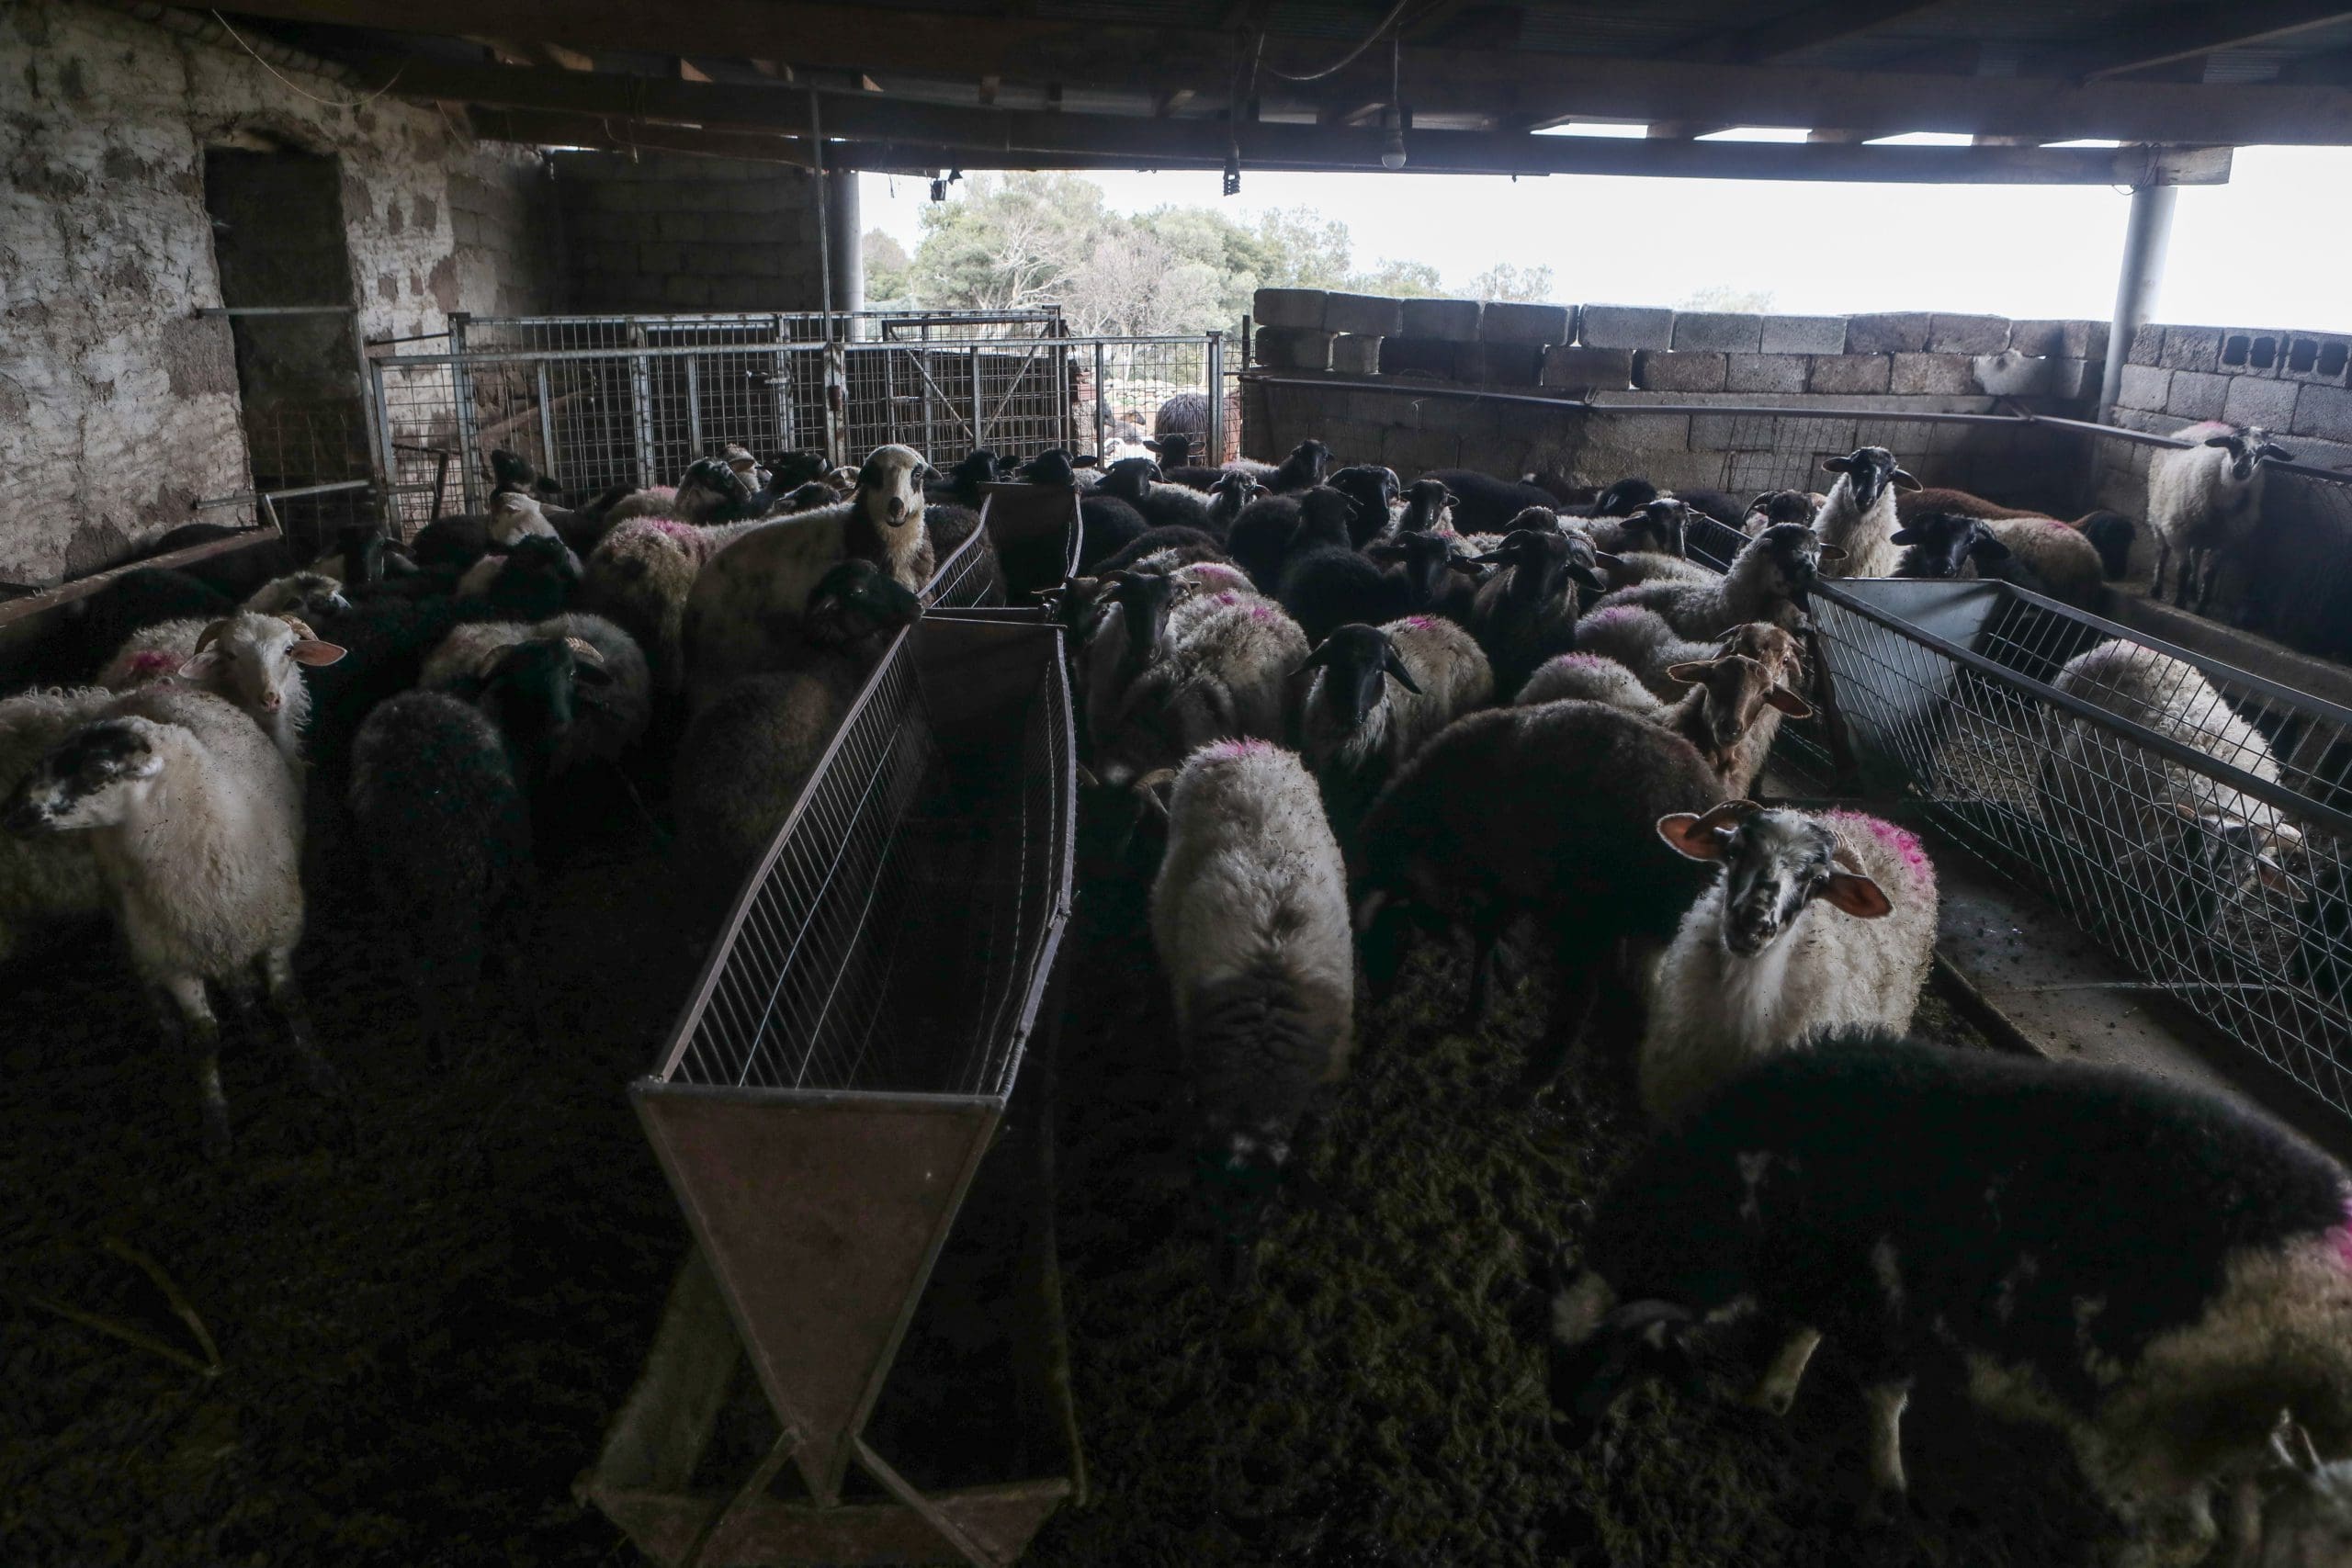 Παρατάσεις προθεσμιών κτηνοτροφικών εγκαταστάσεων – Τροποποίηση παρ. 1 άρθρου 14 και παρ. 3 άρθρου 17α ν.4056/2012